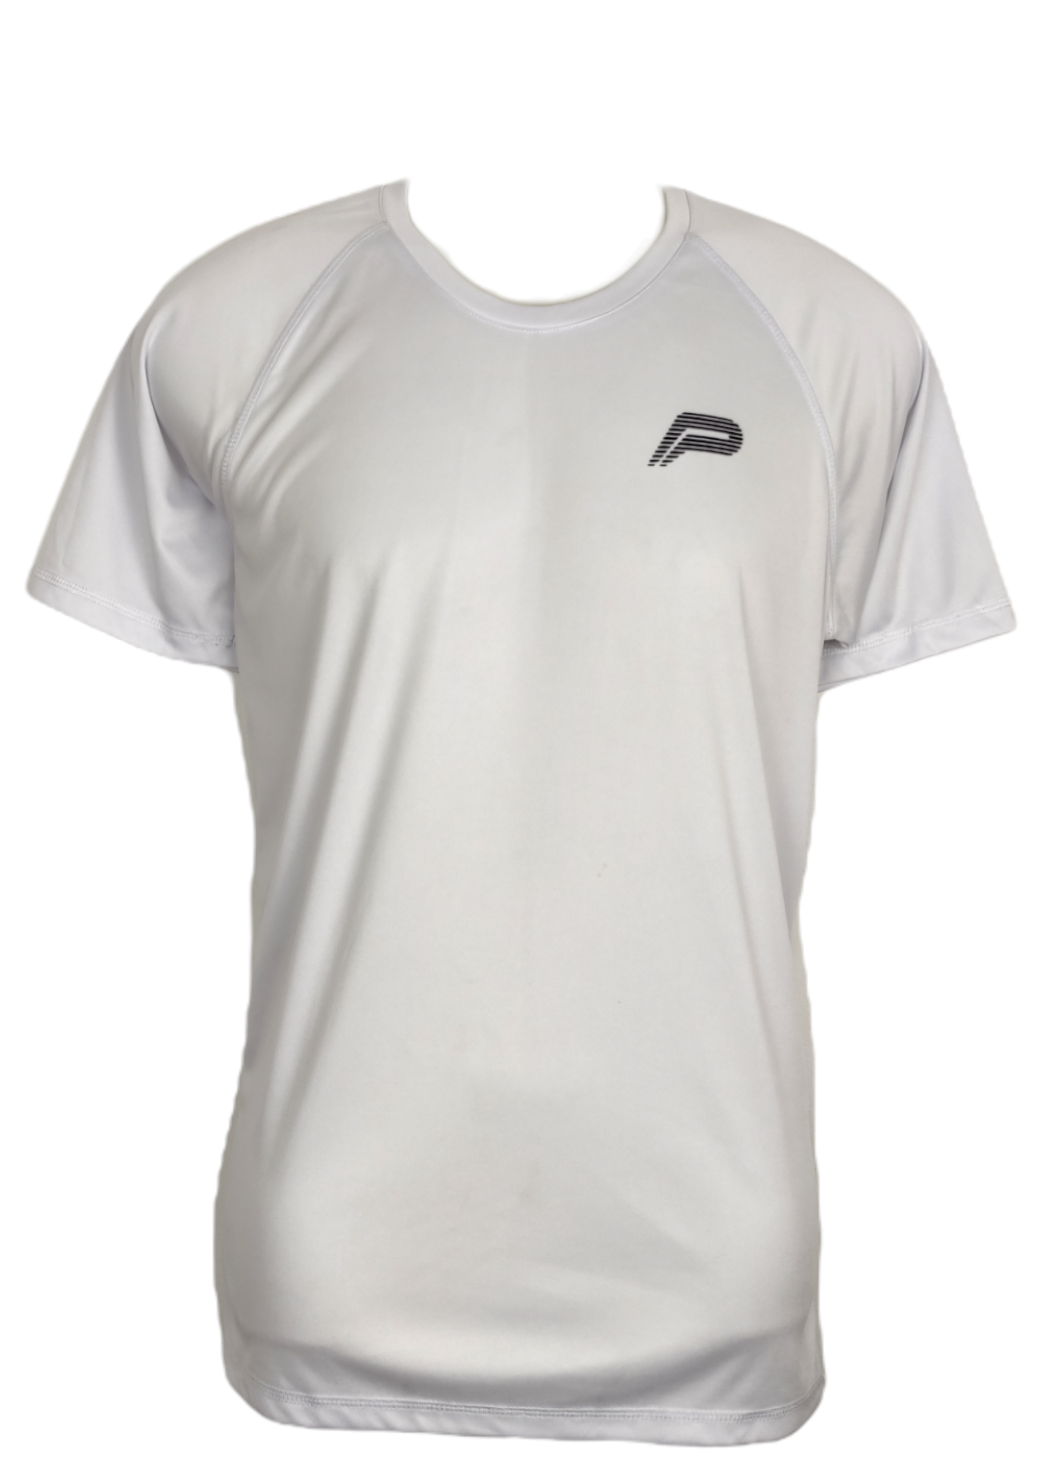 Αθλητική Ανδρική Μπλούζα PURSUE FITNESS σε Λευκό Χρώμα (Medium)